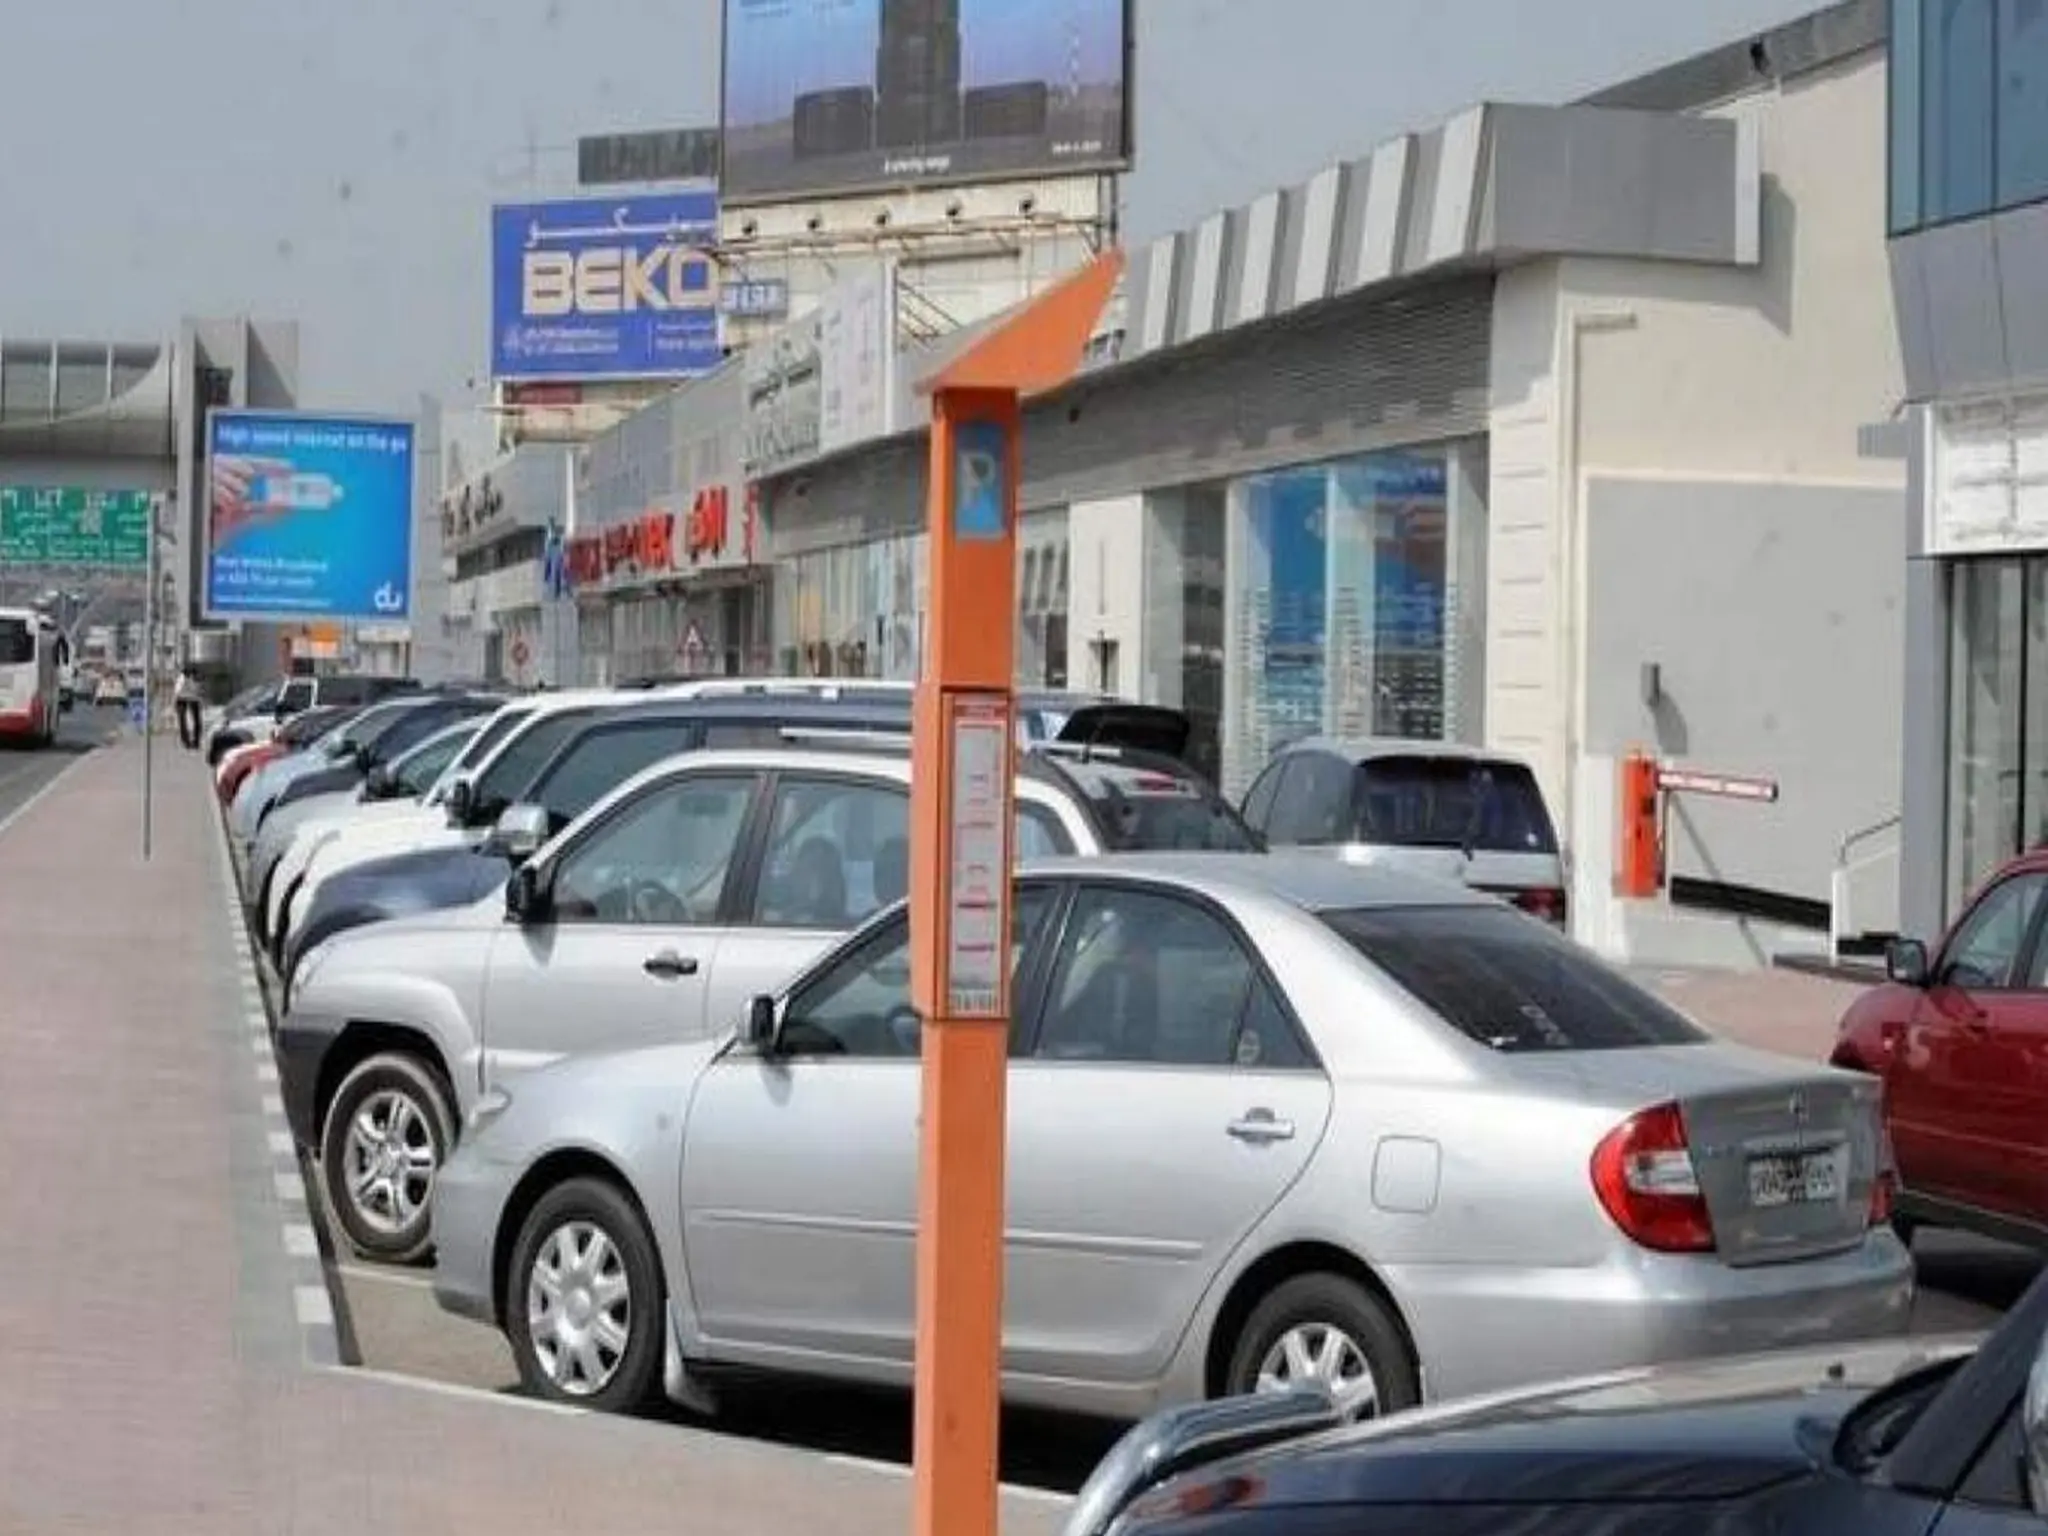 توفير خدمة المواقف المجانية لبعض السيارات في دبي وتحديد اجراءات الحصول على التصريح